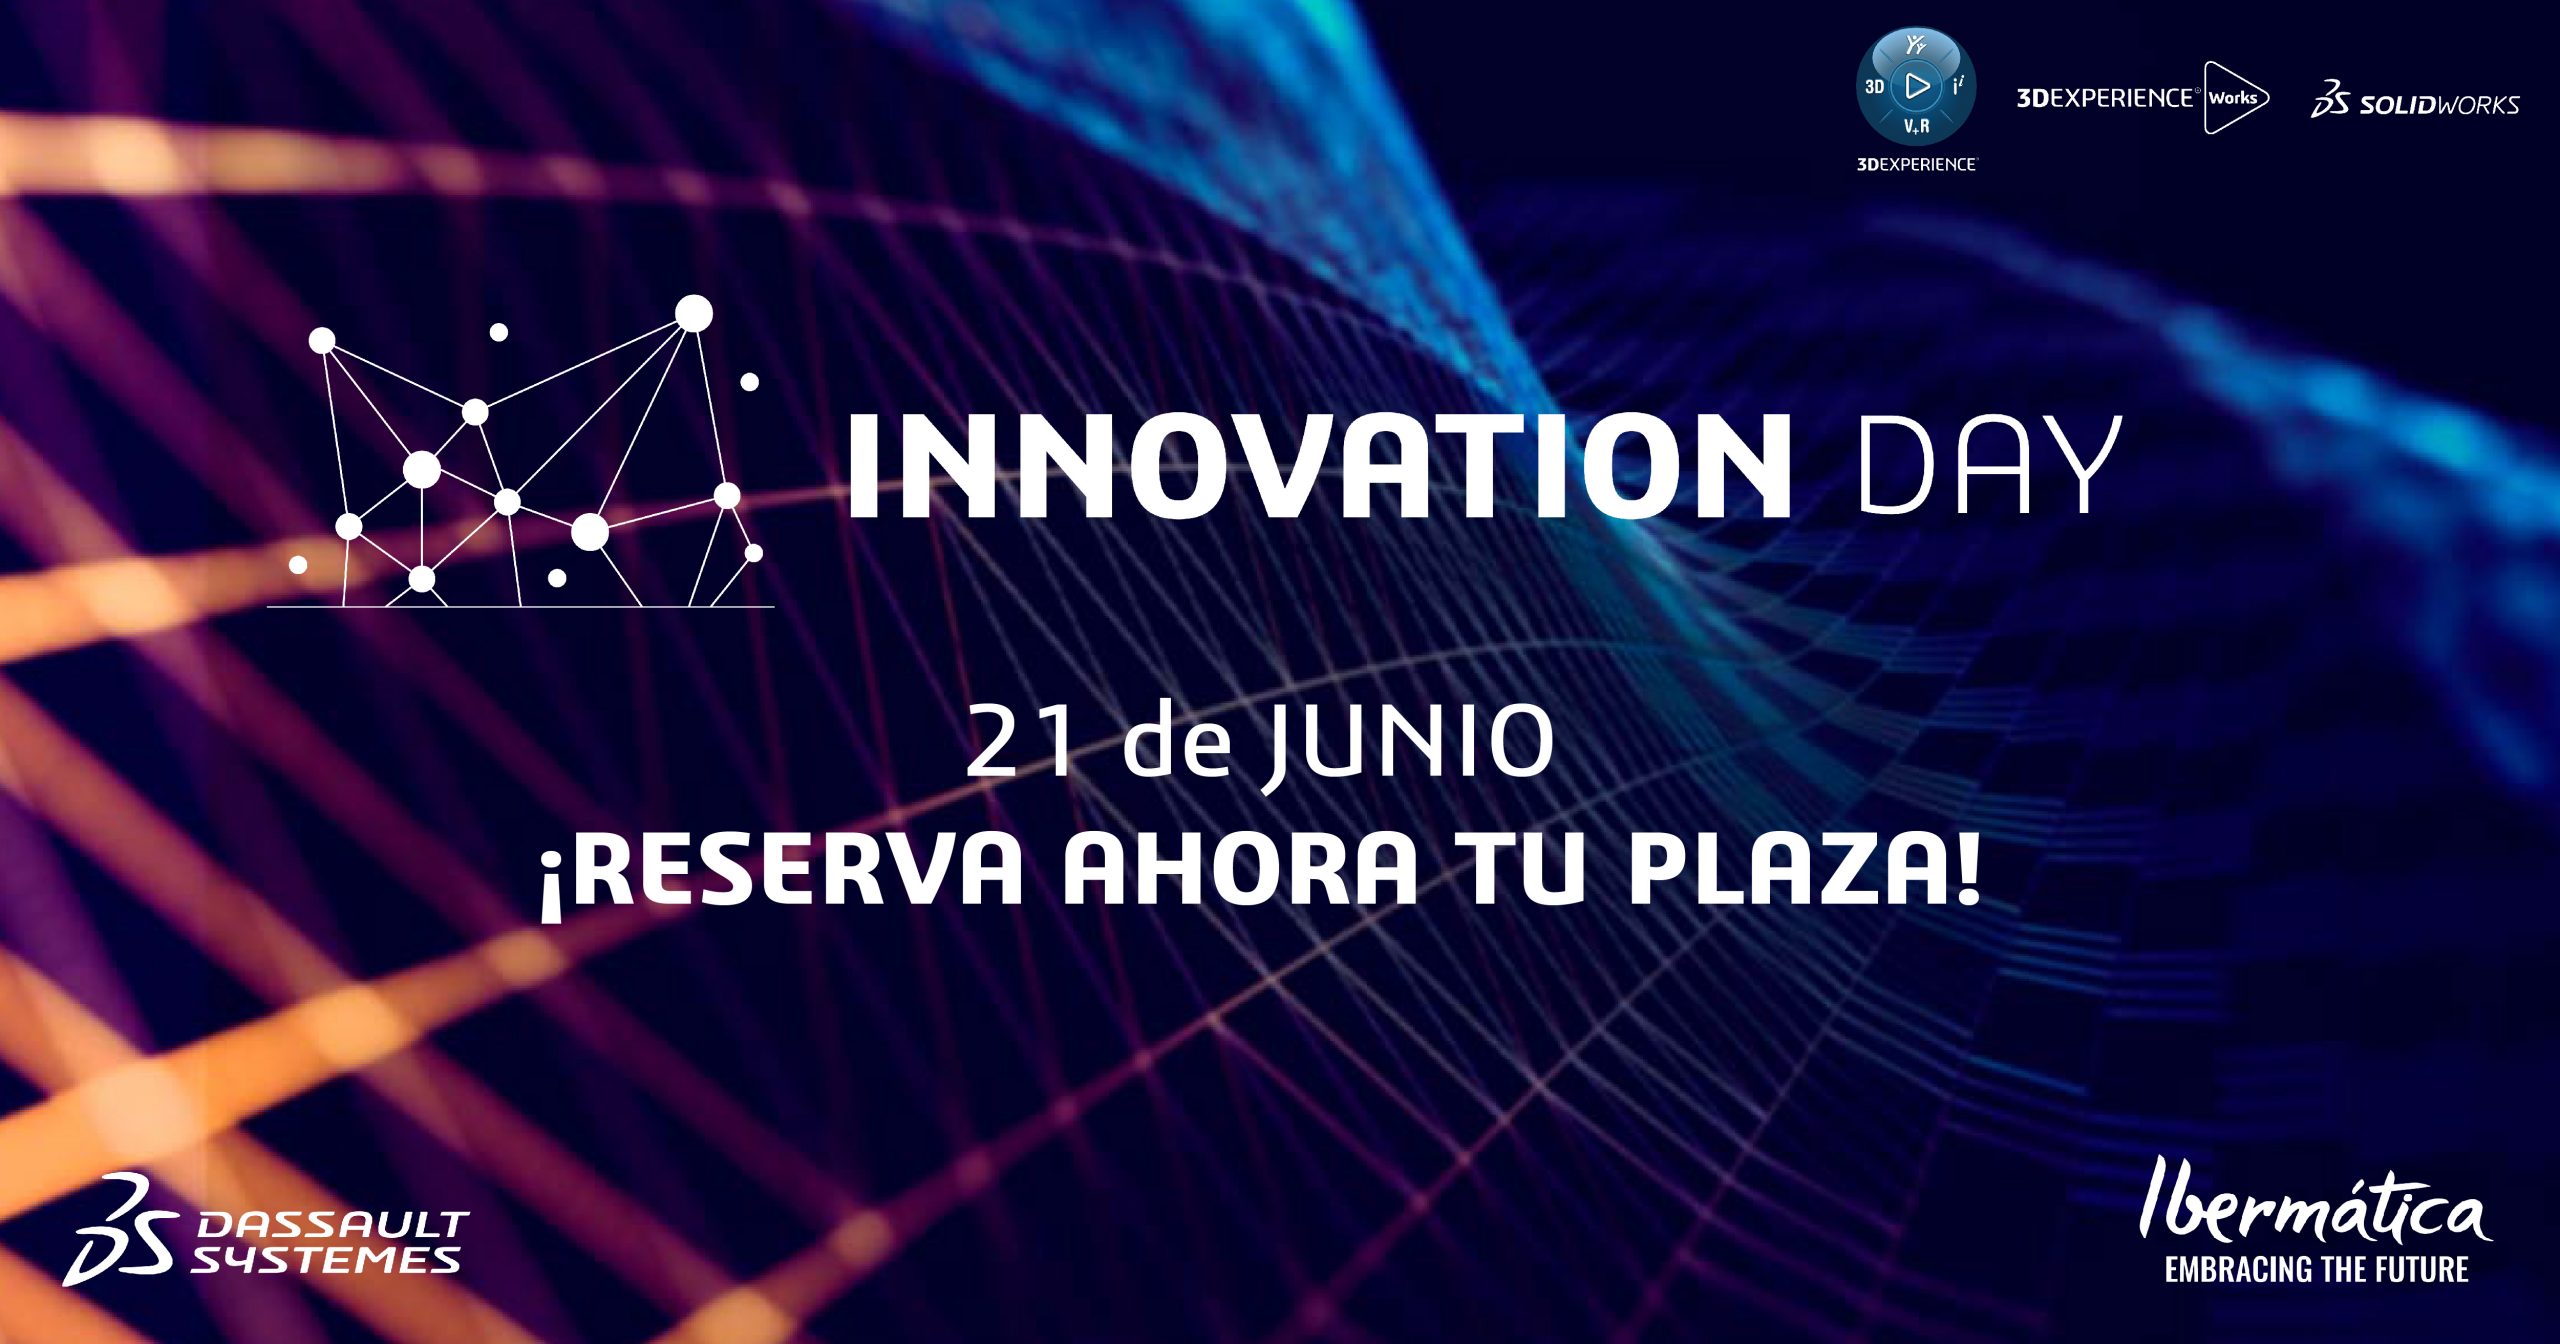 INNOVATION DAY 2022 - Descubre todas las novedades para la ingenierÃ­a cloud e ingenierÃ­a 4.0. Â¡INSCRÃBETE AHORA!